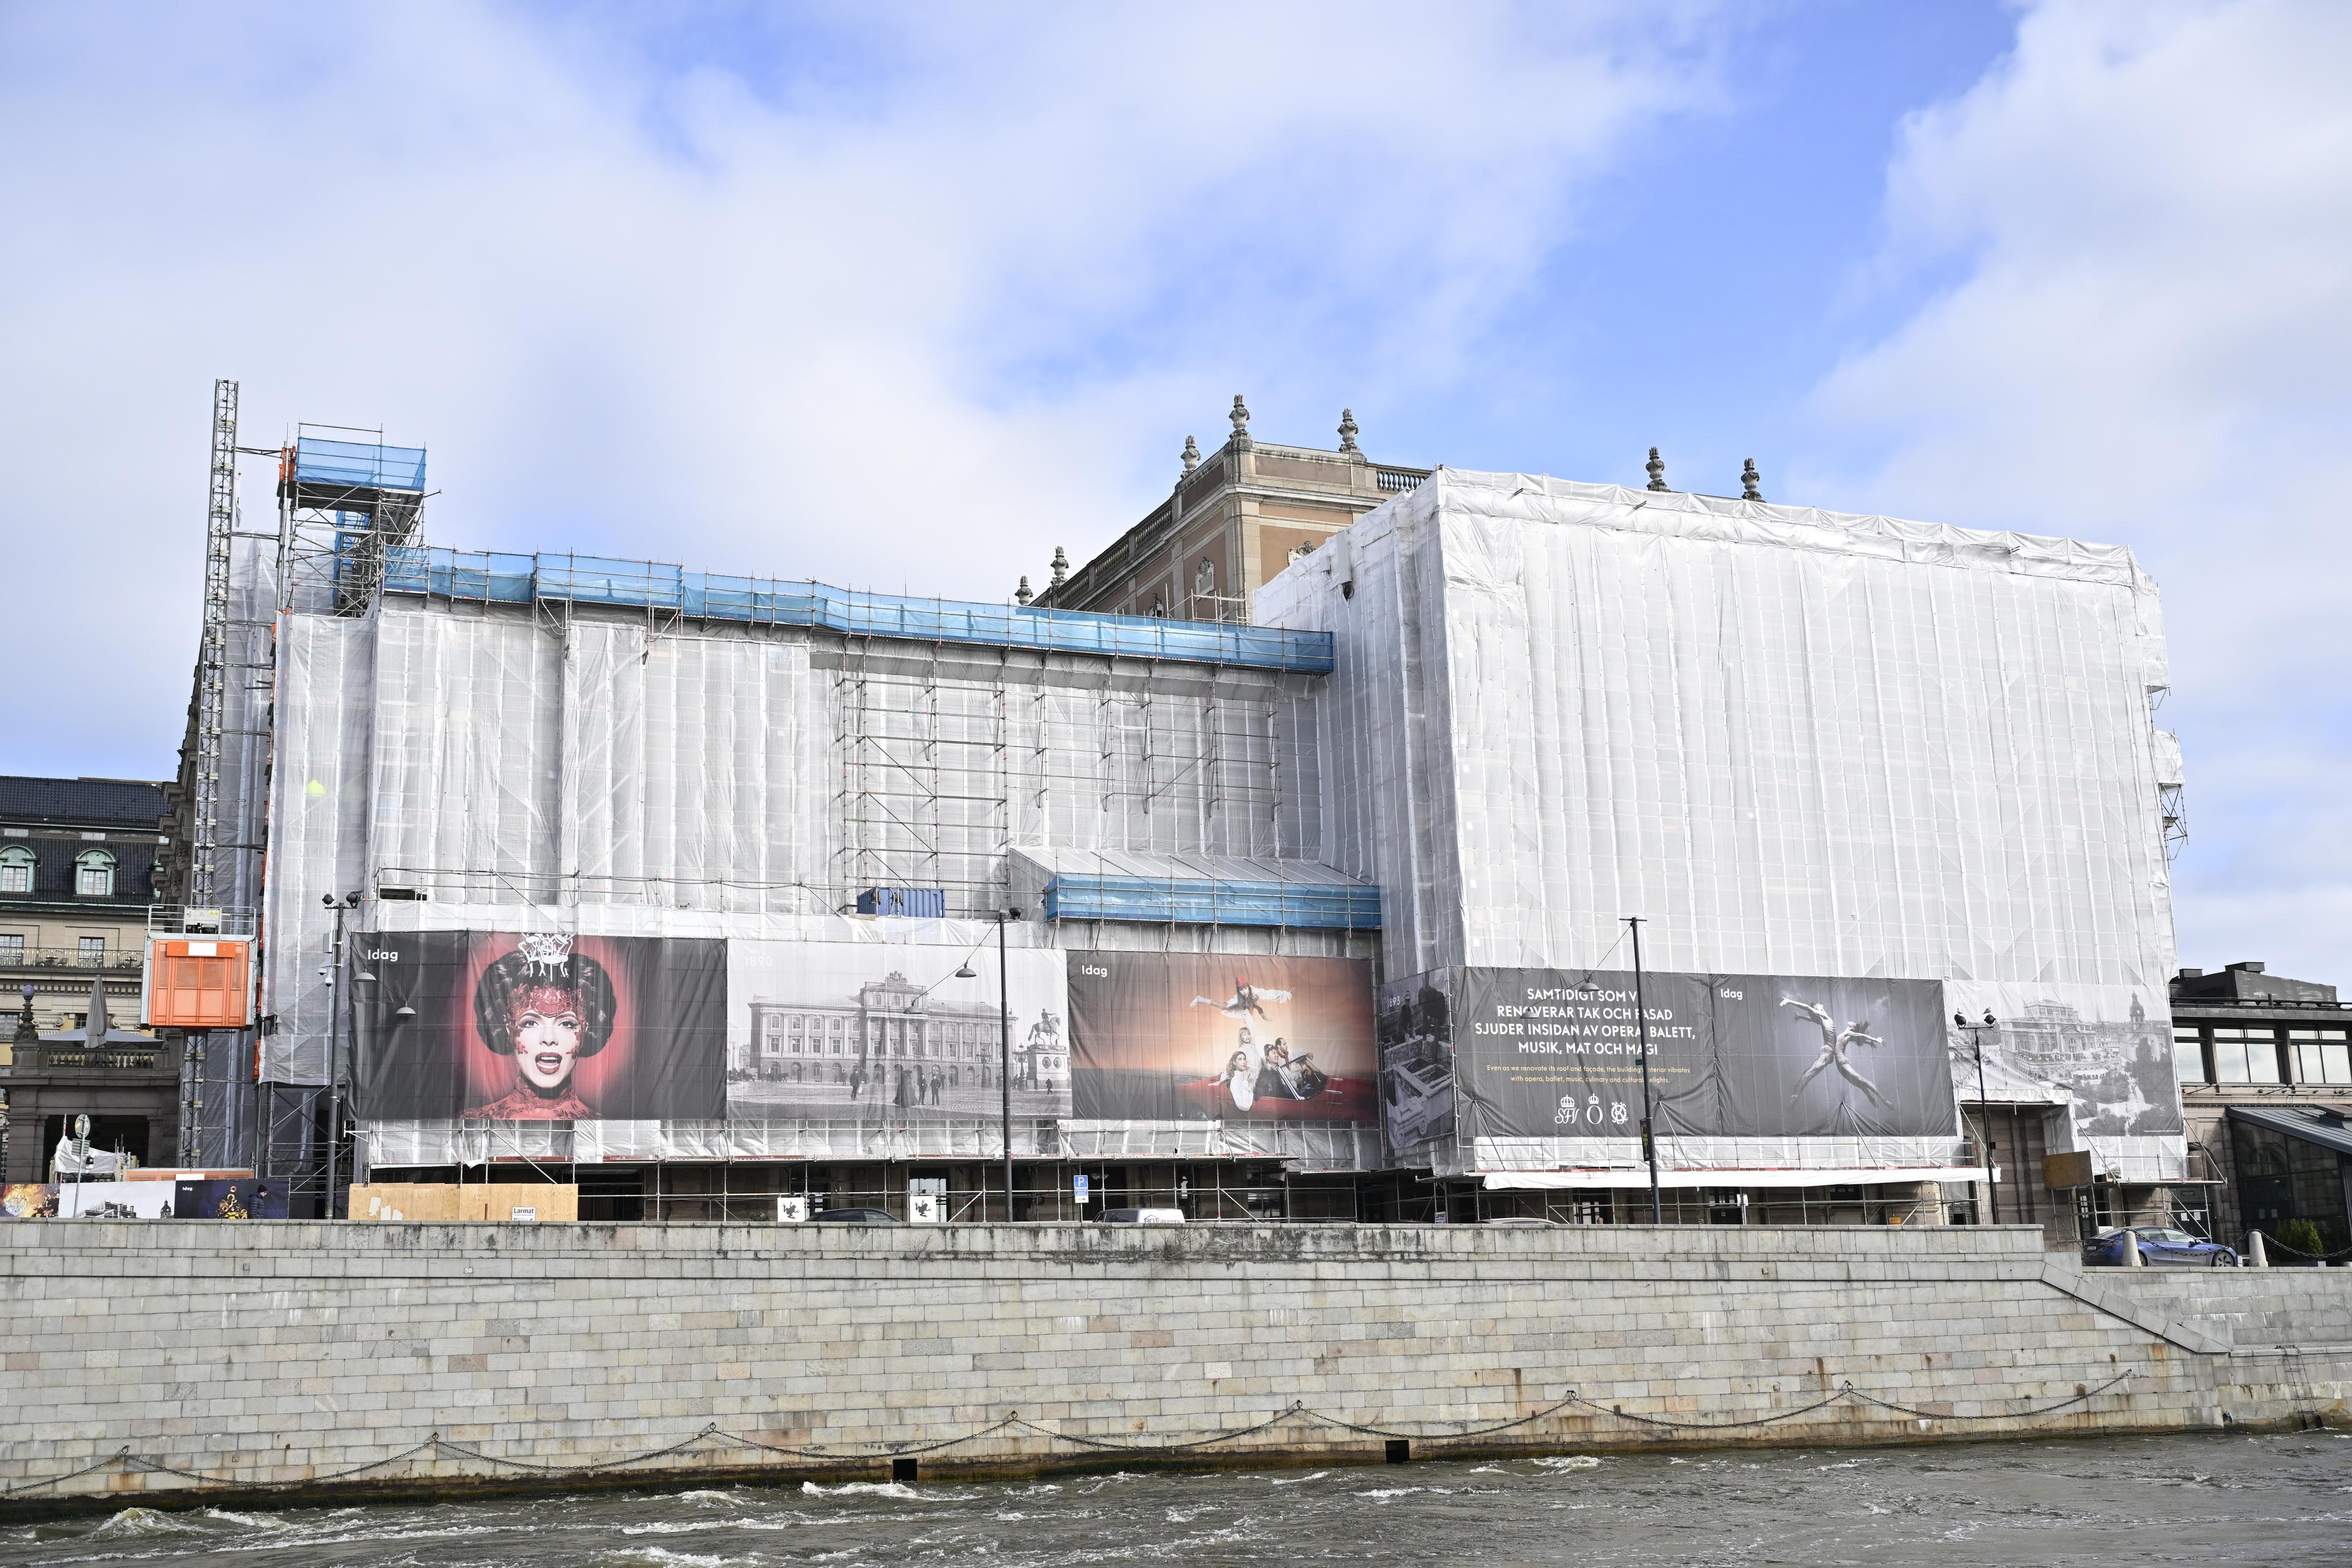 Operan i Stockholm ska renoveras – med följden att hyran höjs till 230 miljoner kronor per år. Men nu ska hyressättningen utredas av regeringen. Arkivbild. Foto: Henrik Montgomery/TT